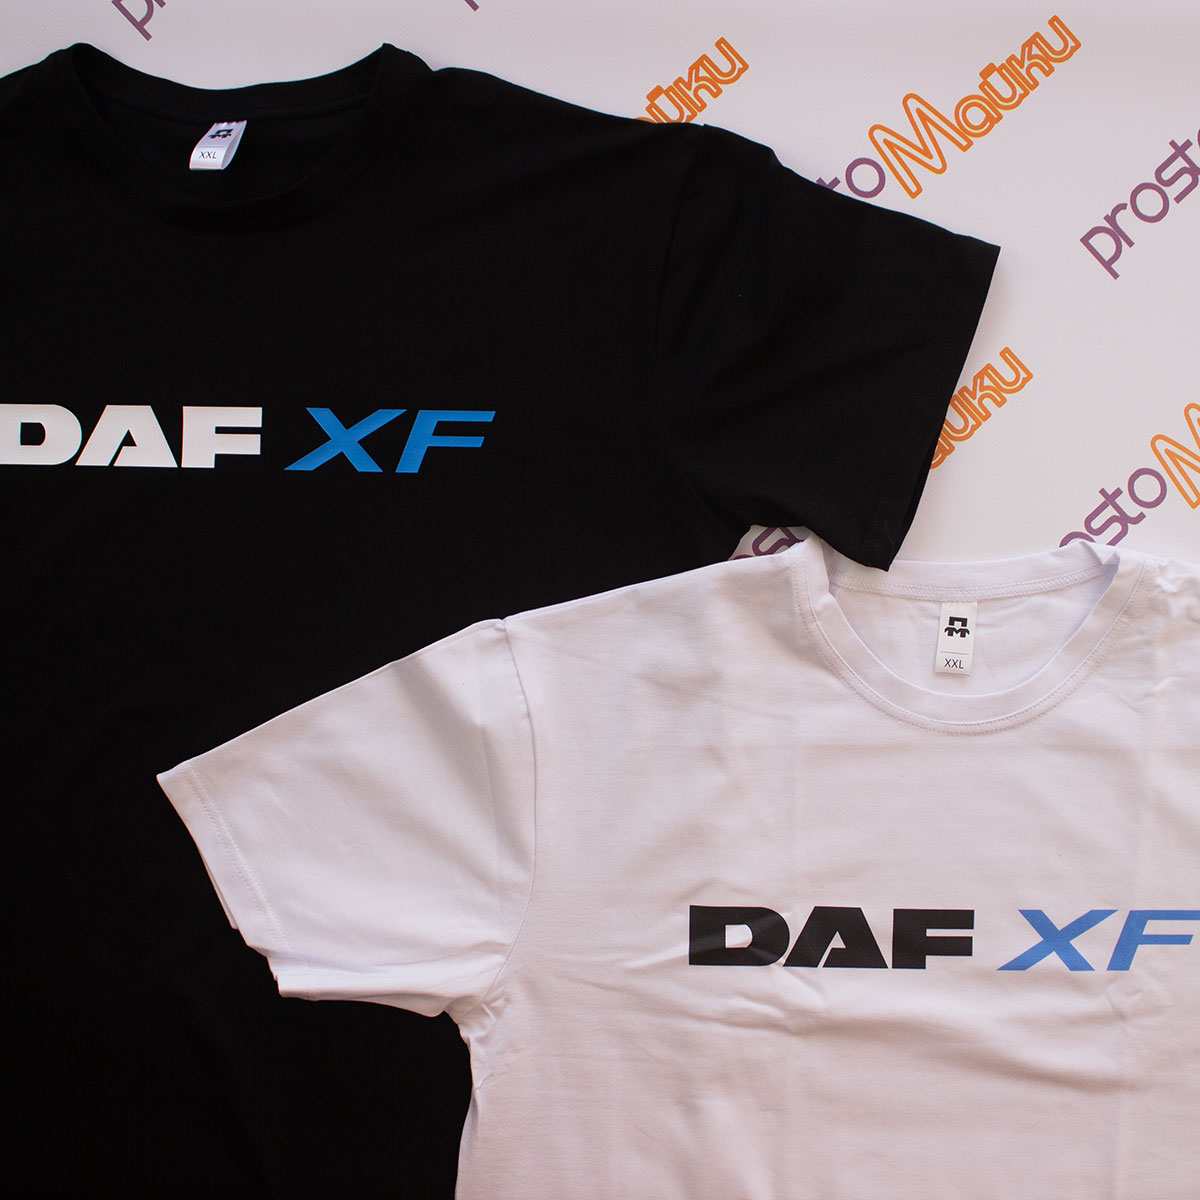 Дитяча футболка DAF XF (2)